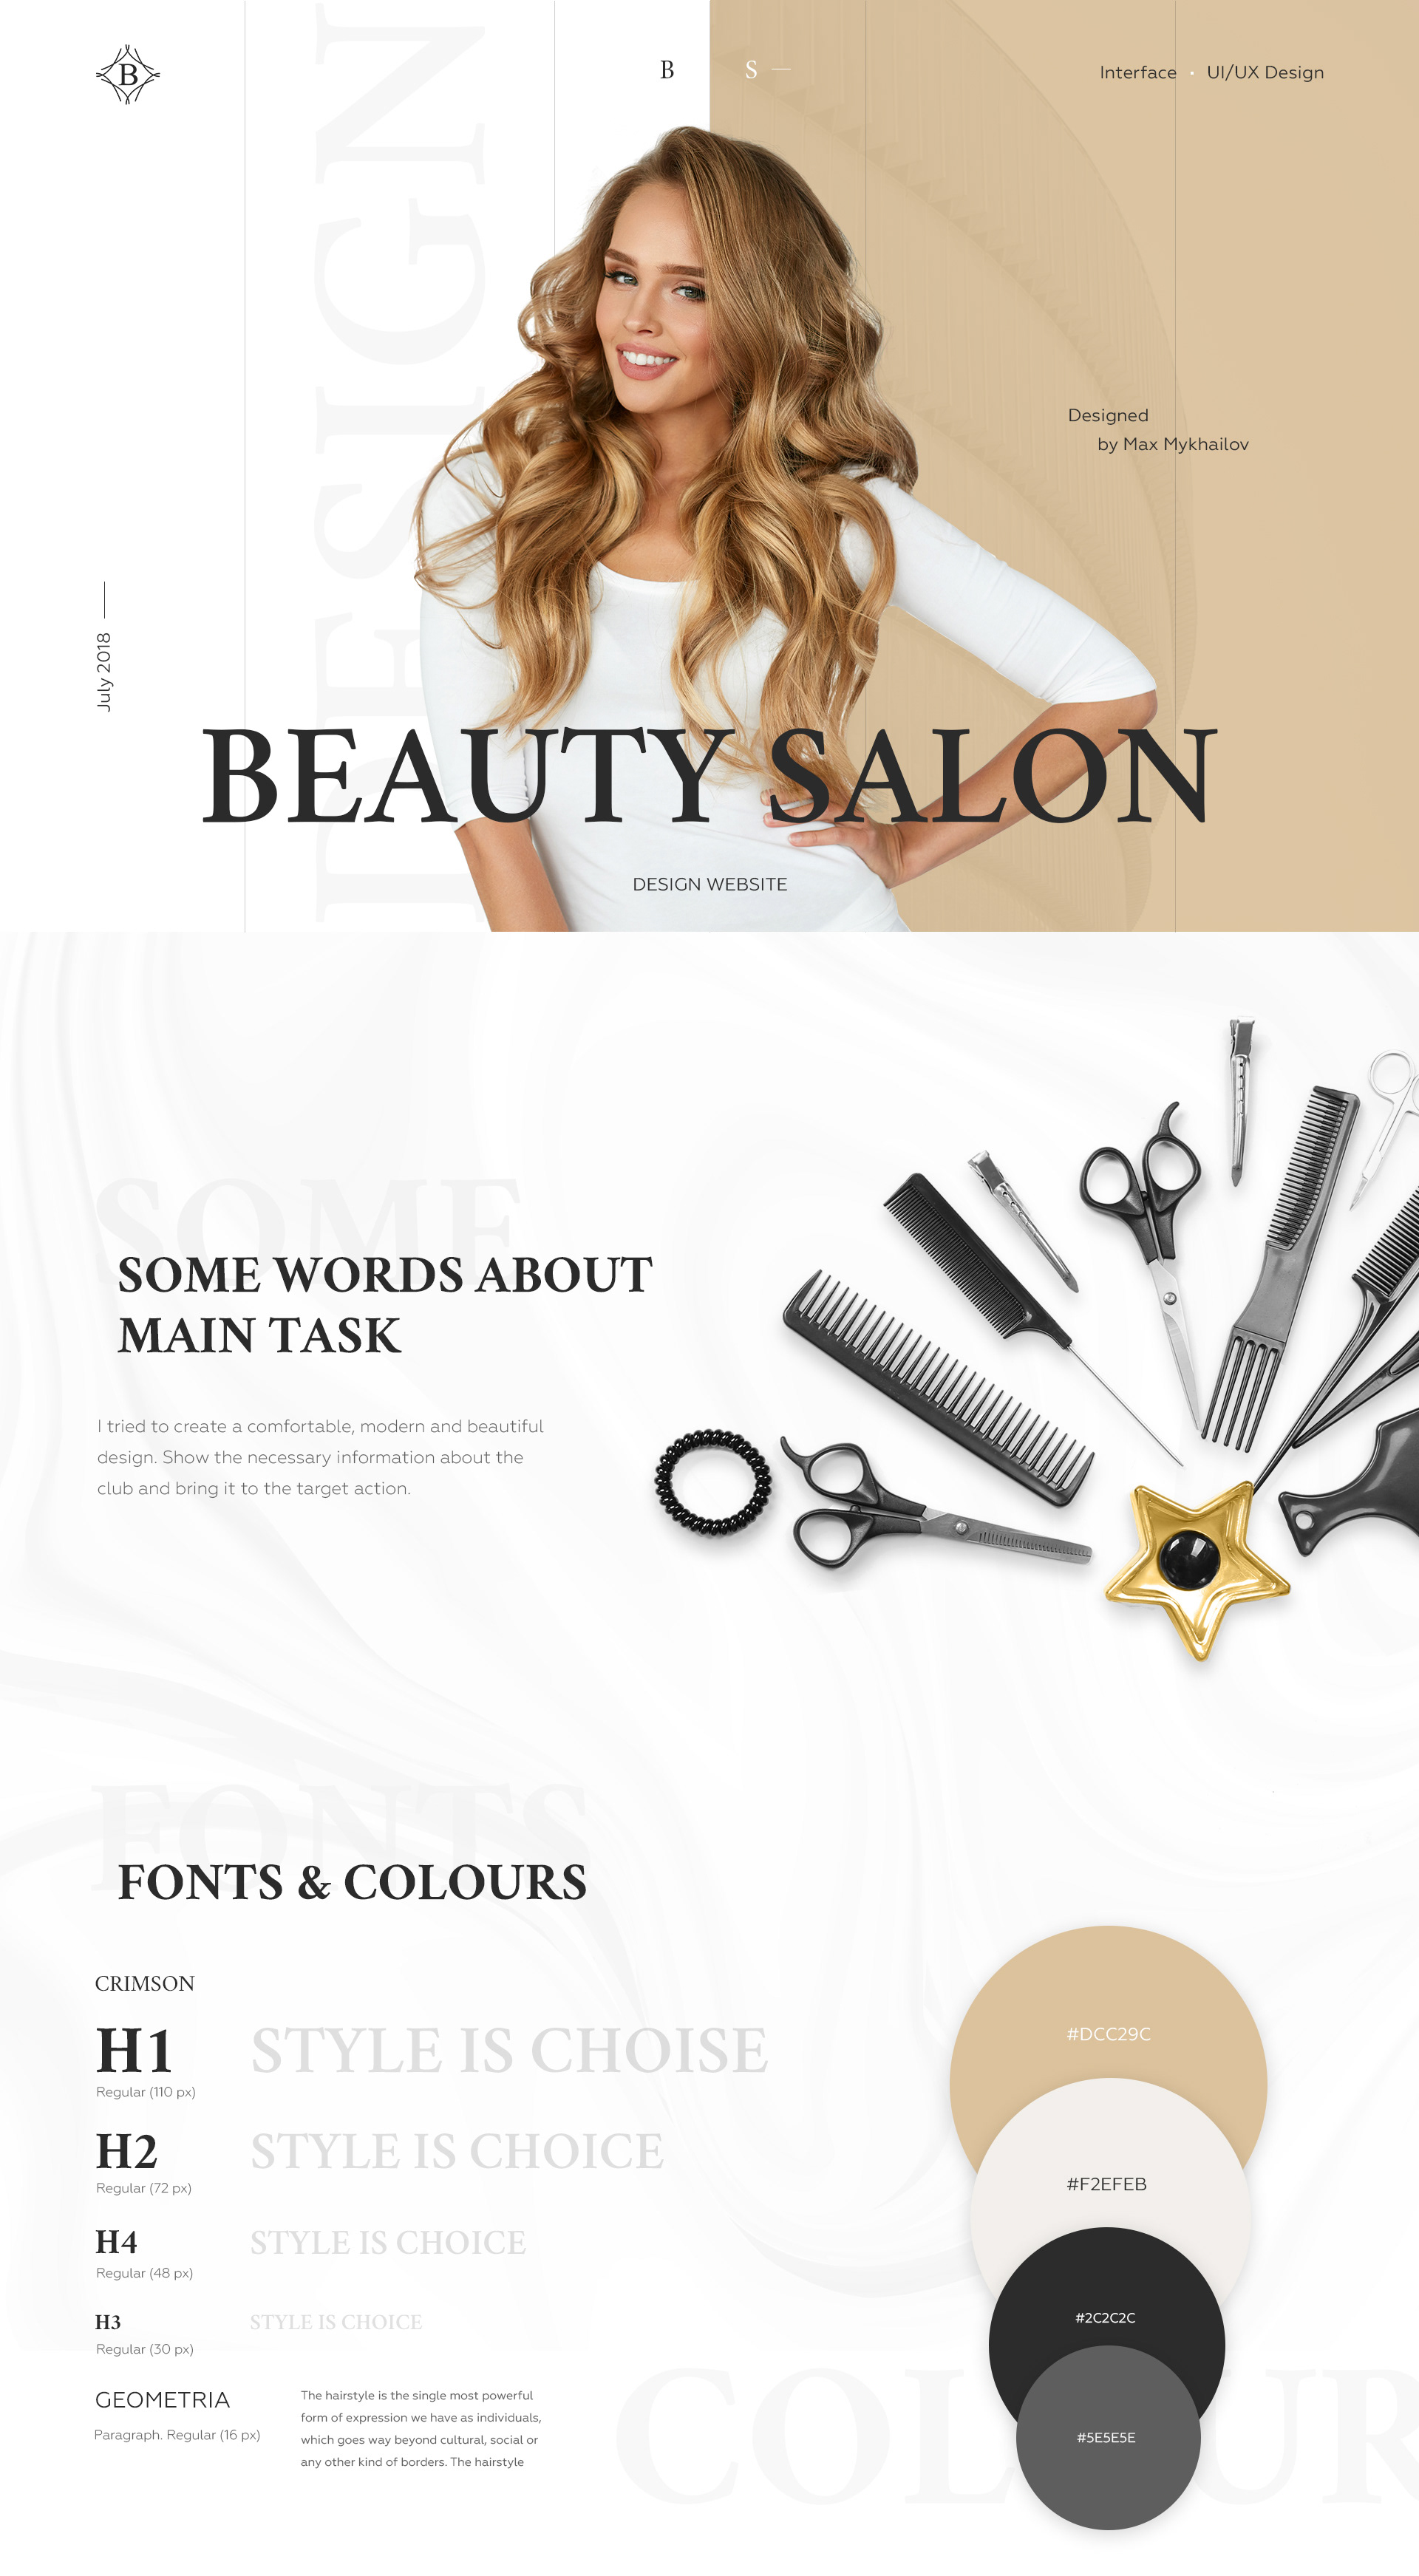 Beauty salon - Website Design | Behance